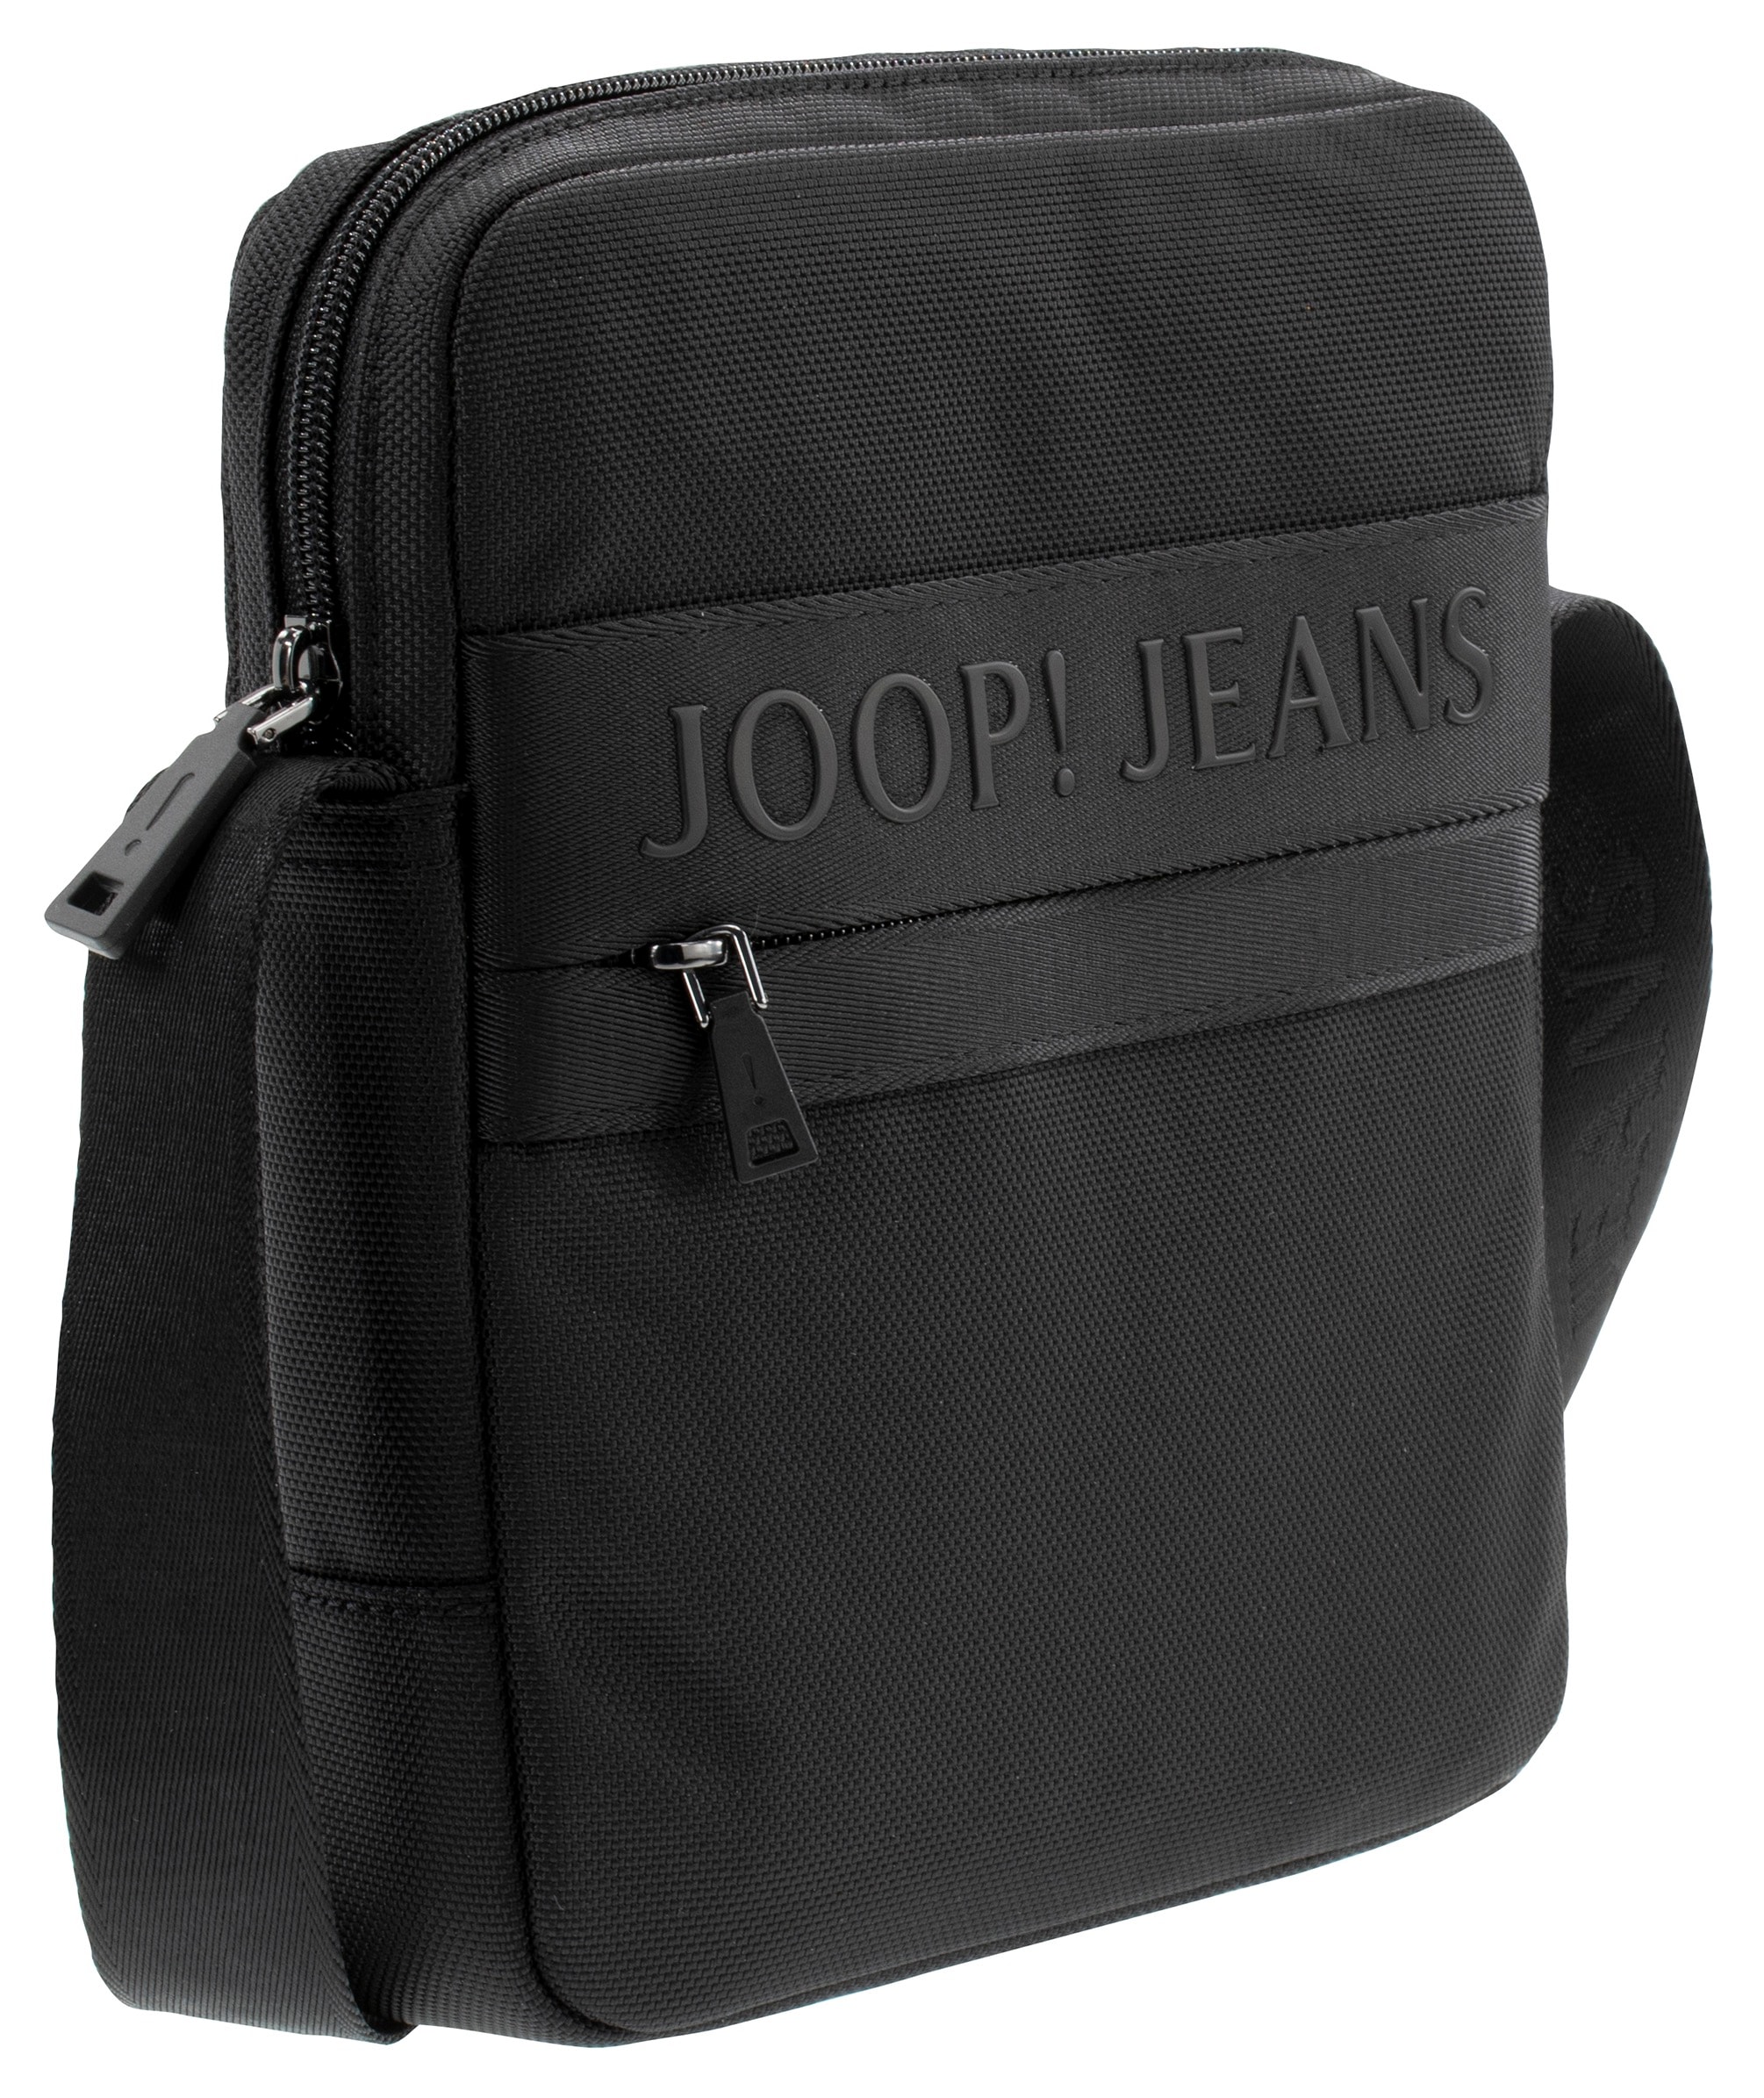 Joop Jeans milo Reißverschluss-Rückfach mit kaufen »modica Umhängetasche online xsvz«, shoulderbag